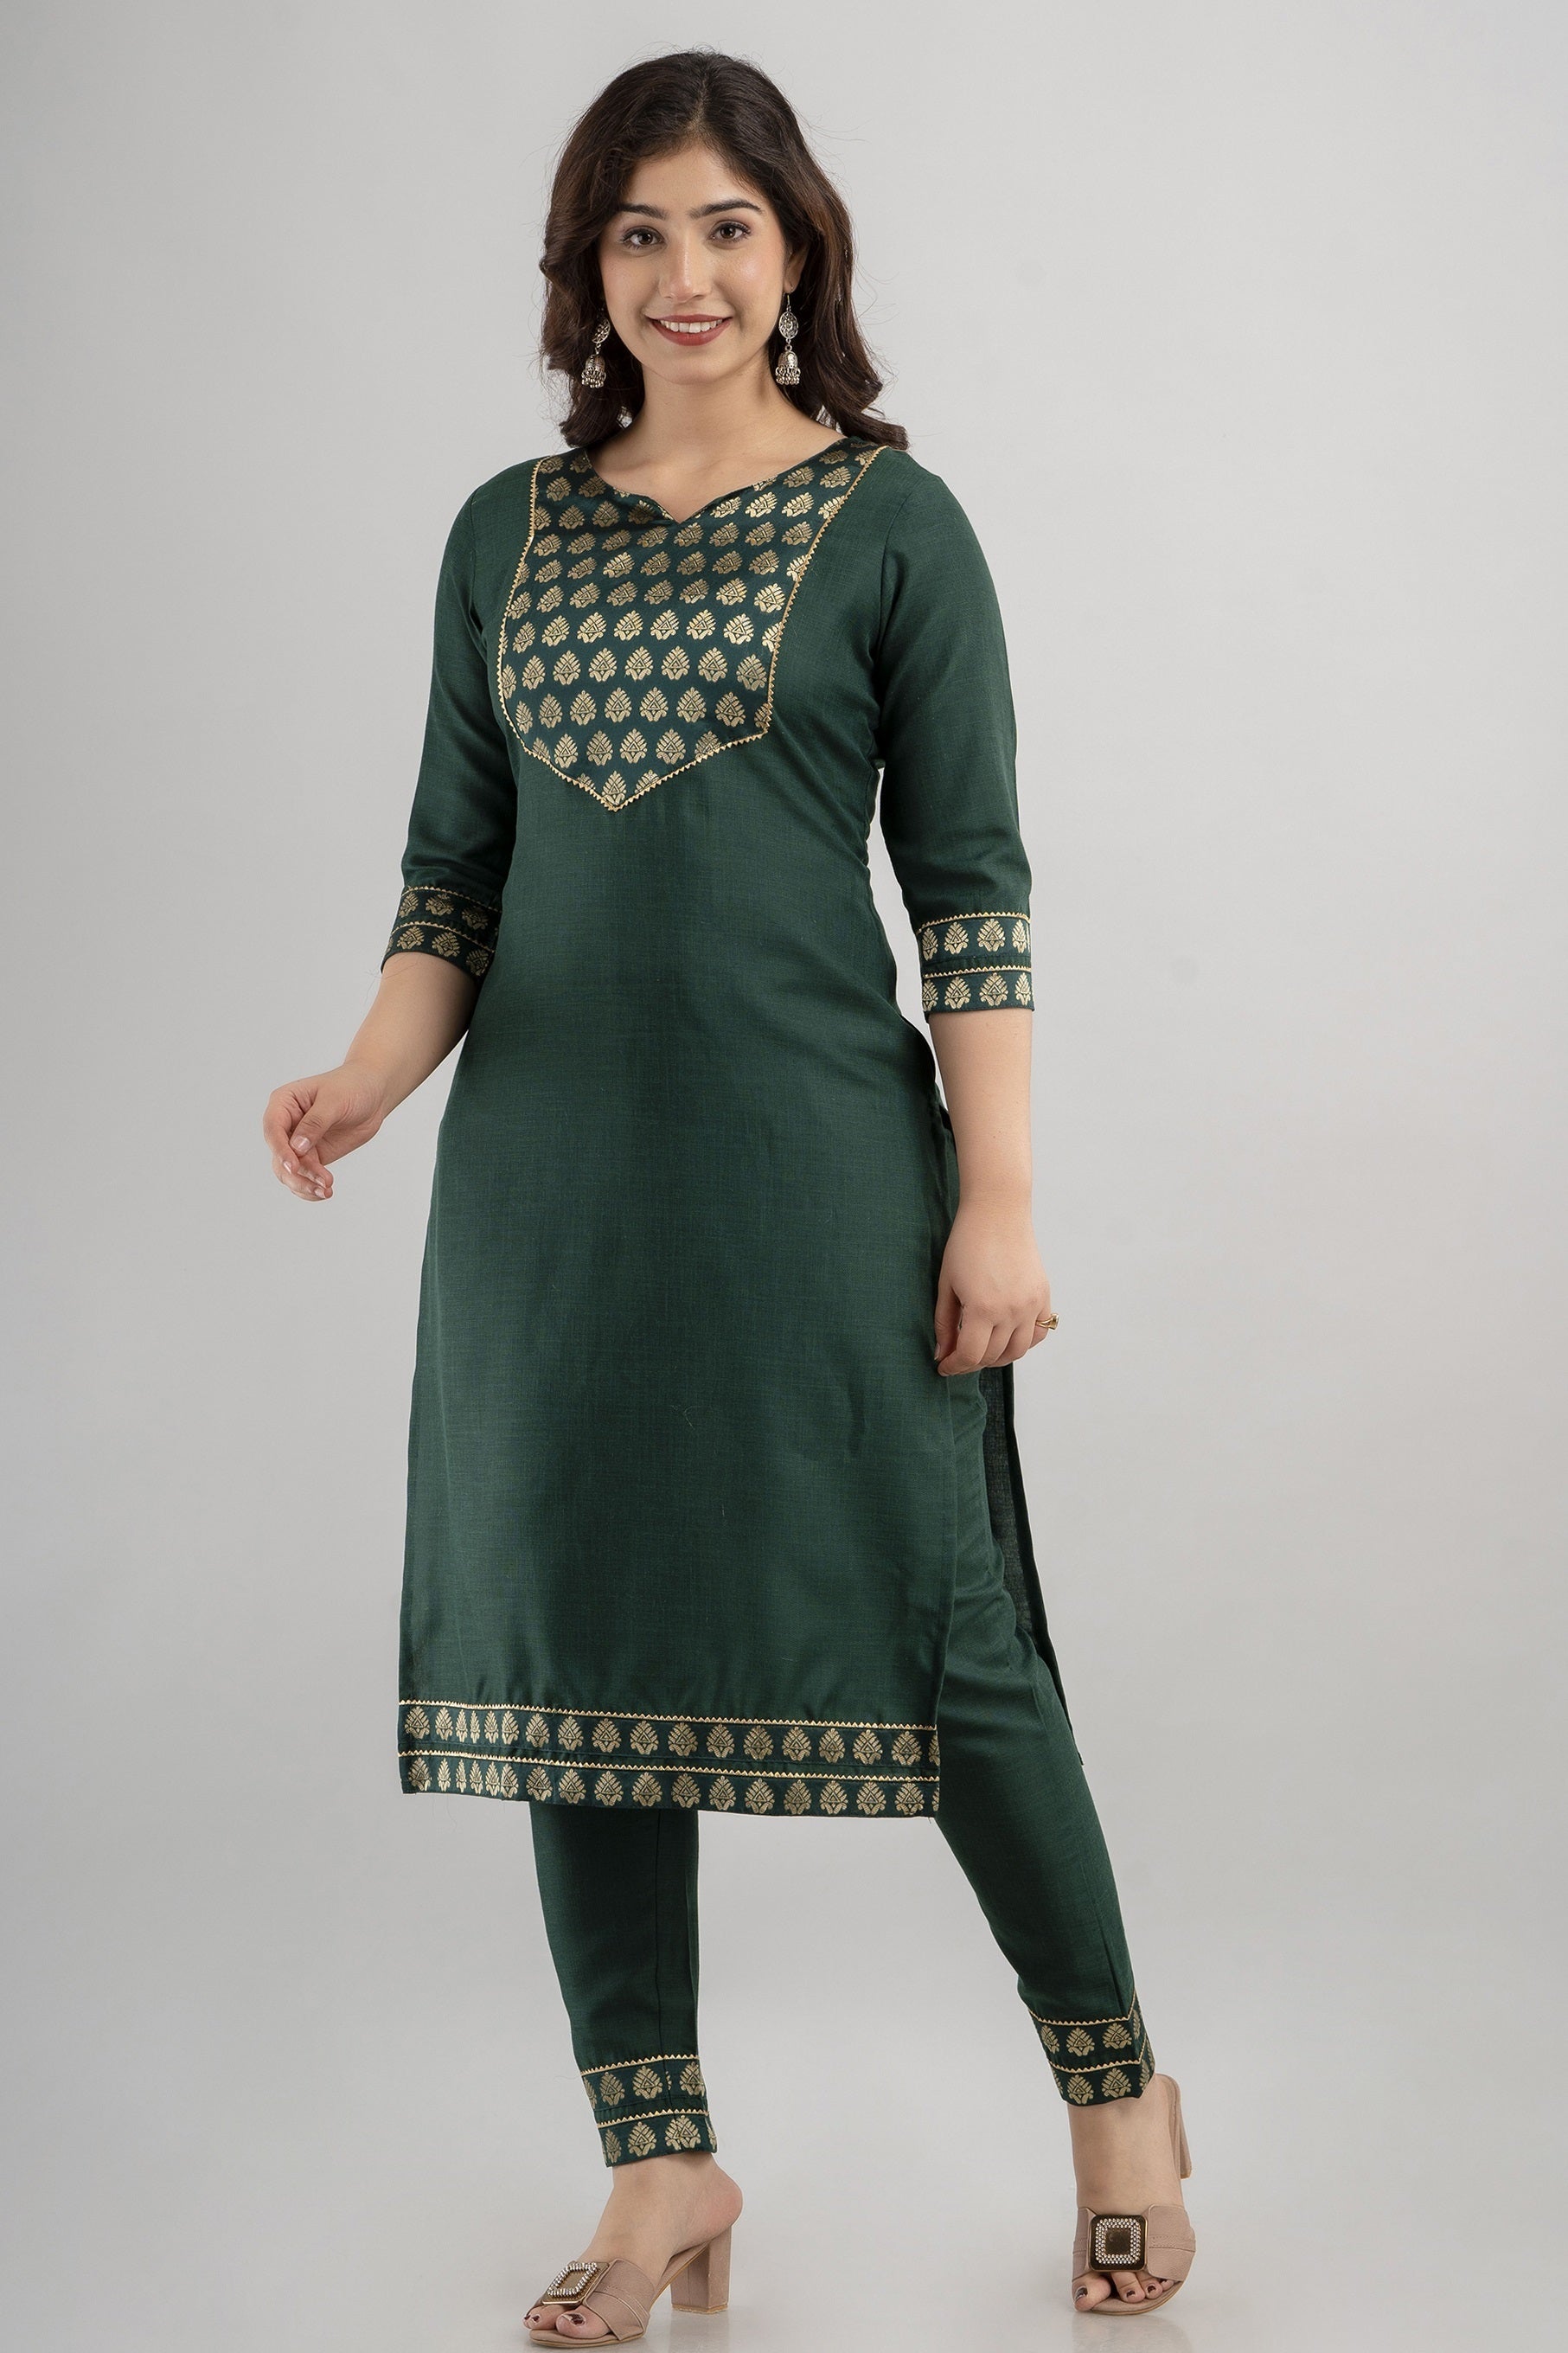 Women's Woven Viscose Straight Kurta Pant & Dupatta Set (Bottle Green) - Charu